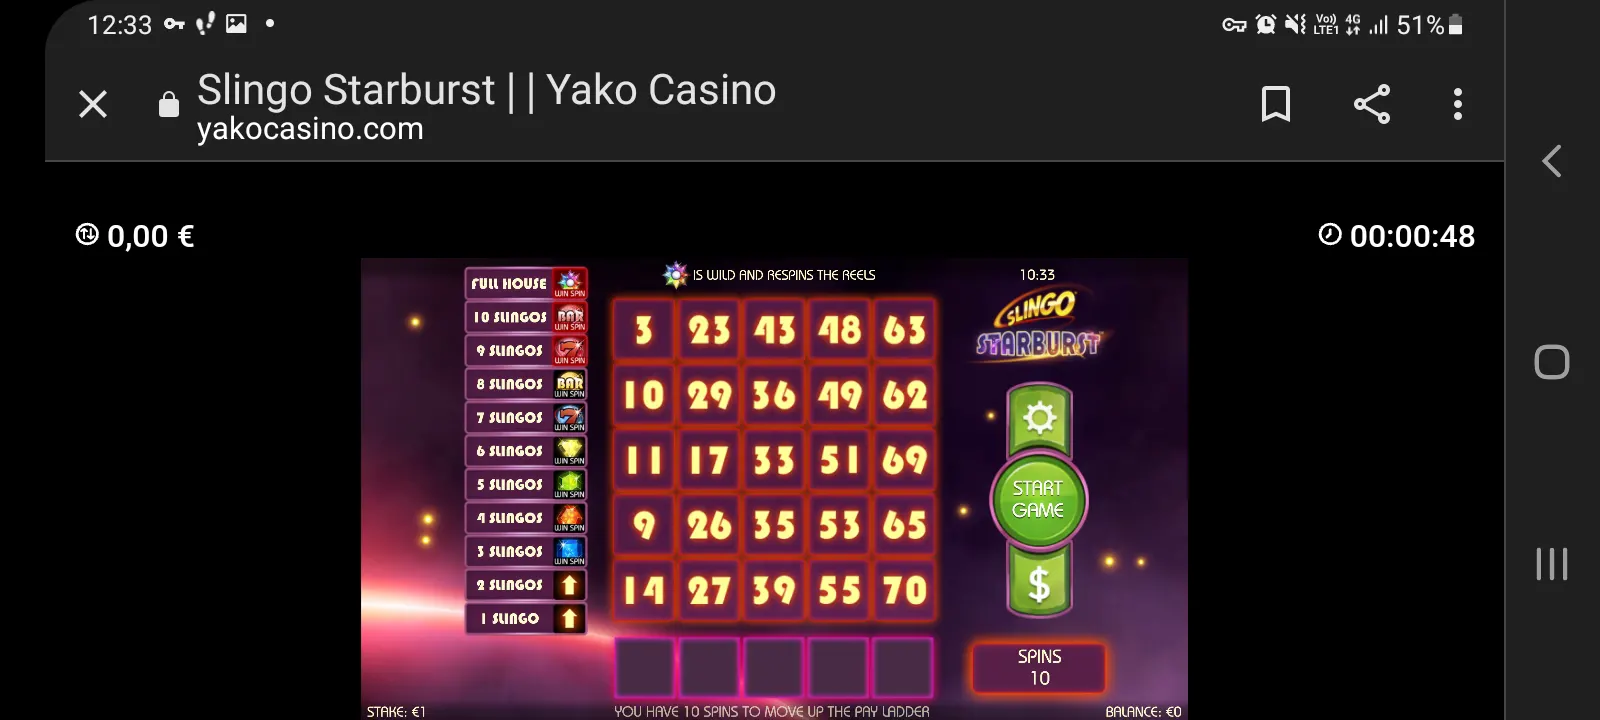 Yako casino app screenshot 10